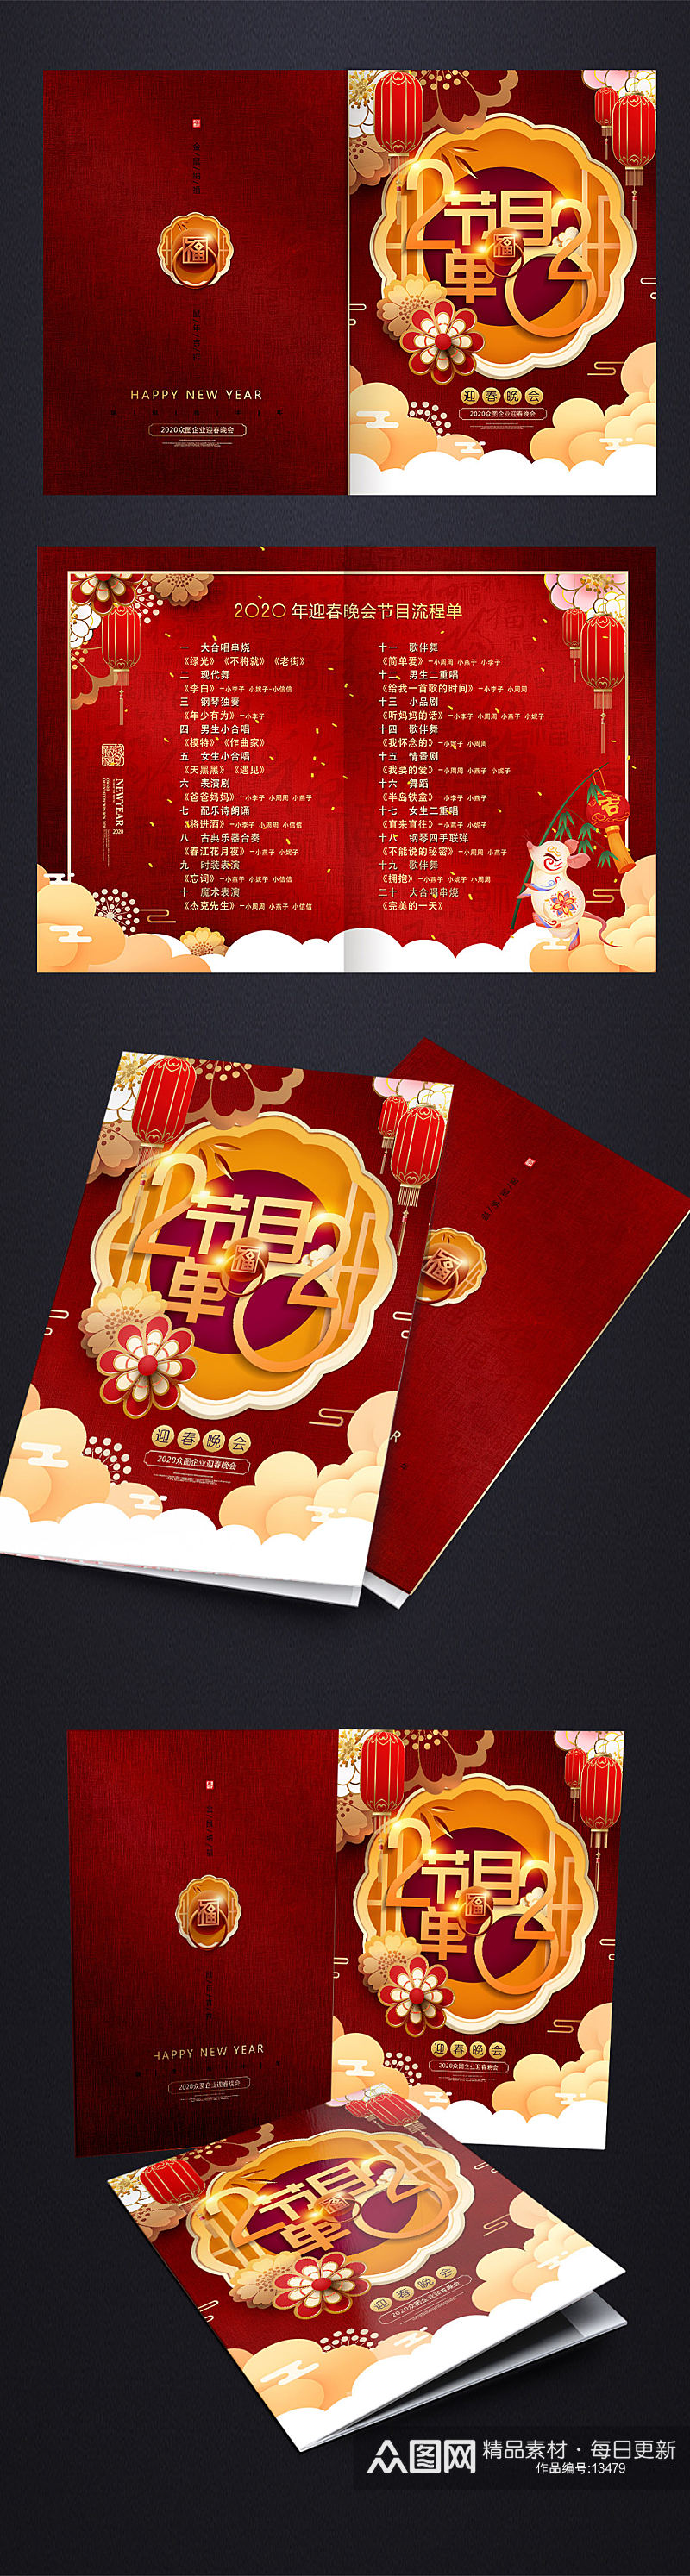 中式大福年会节目单设计素材